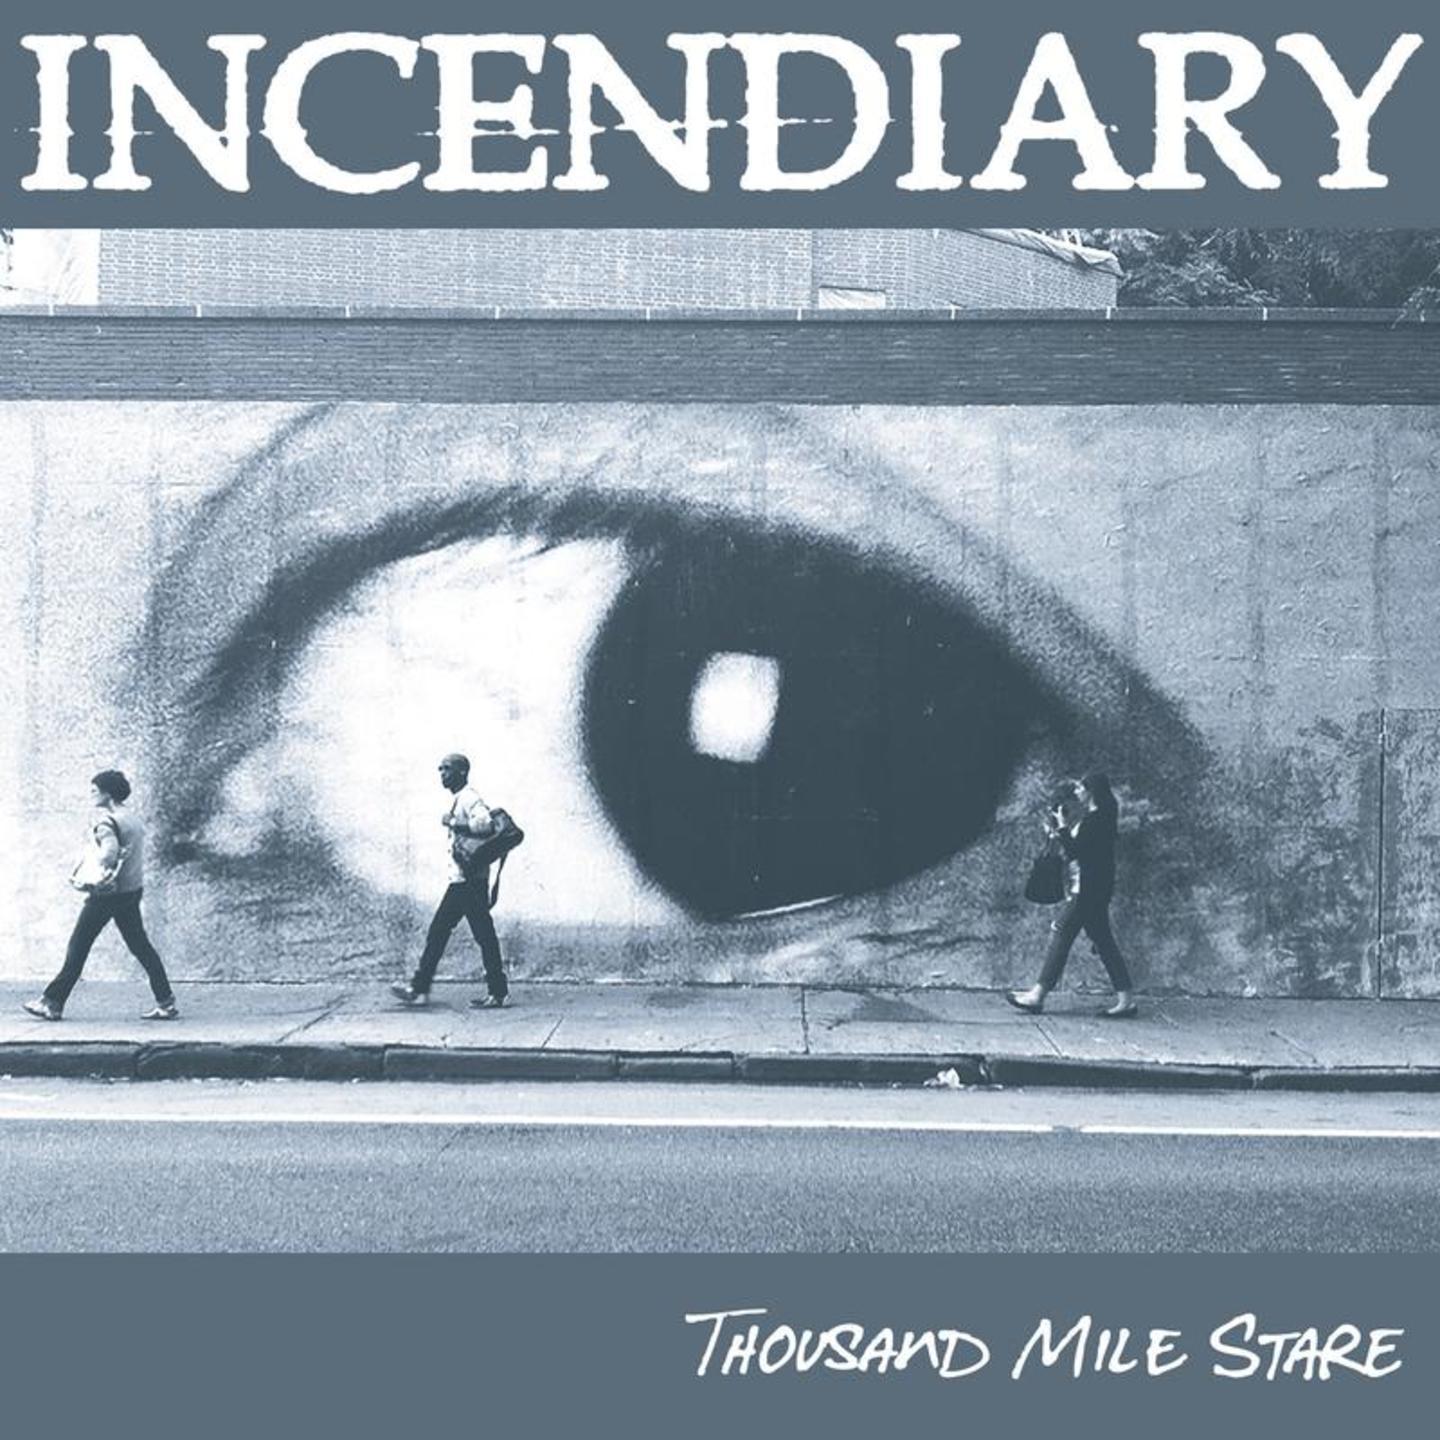 INCENDIARY - Thousand Mile Stare LP Colour vinyl